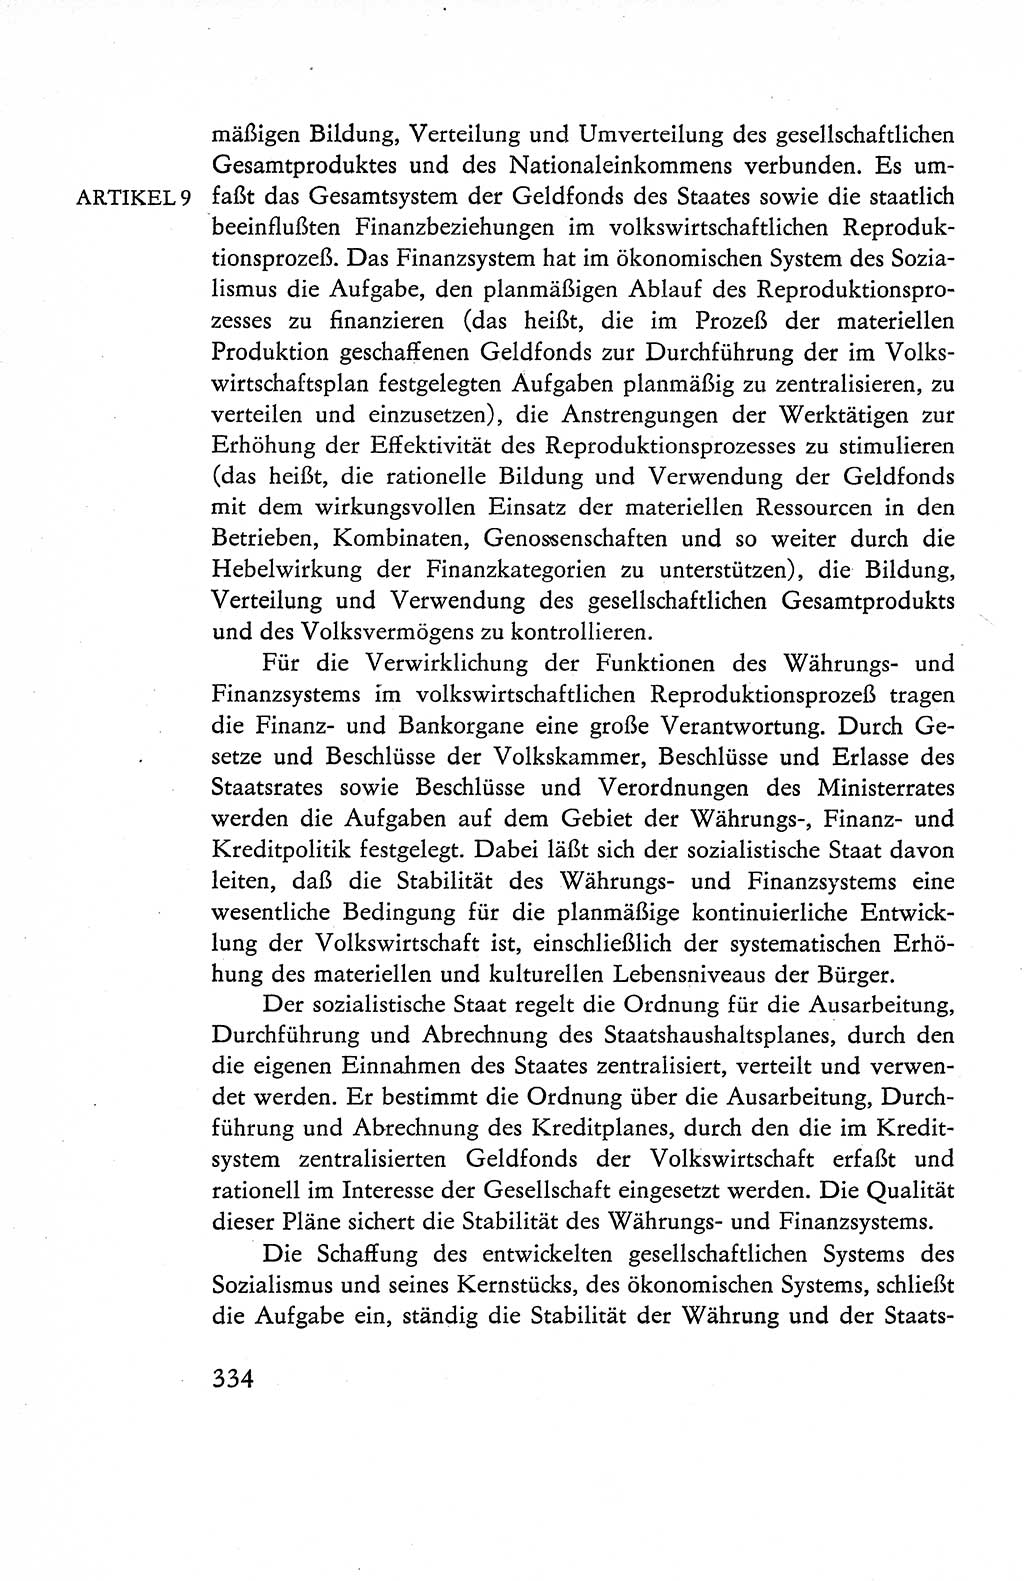 Verfassung der Deutschen Demokratischen Republik (DDR), Dokumente, Kommentar 1969, Band 1, Seite 334 (Verf. DDR Dok. Komm. 1969, Bd. 1, S. 334)